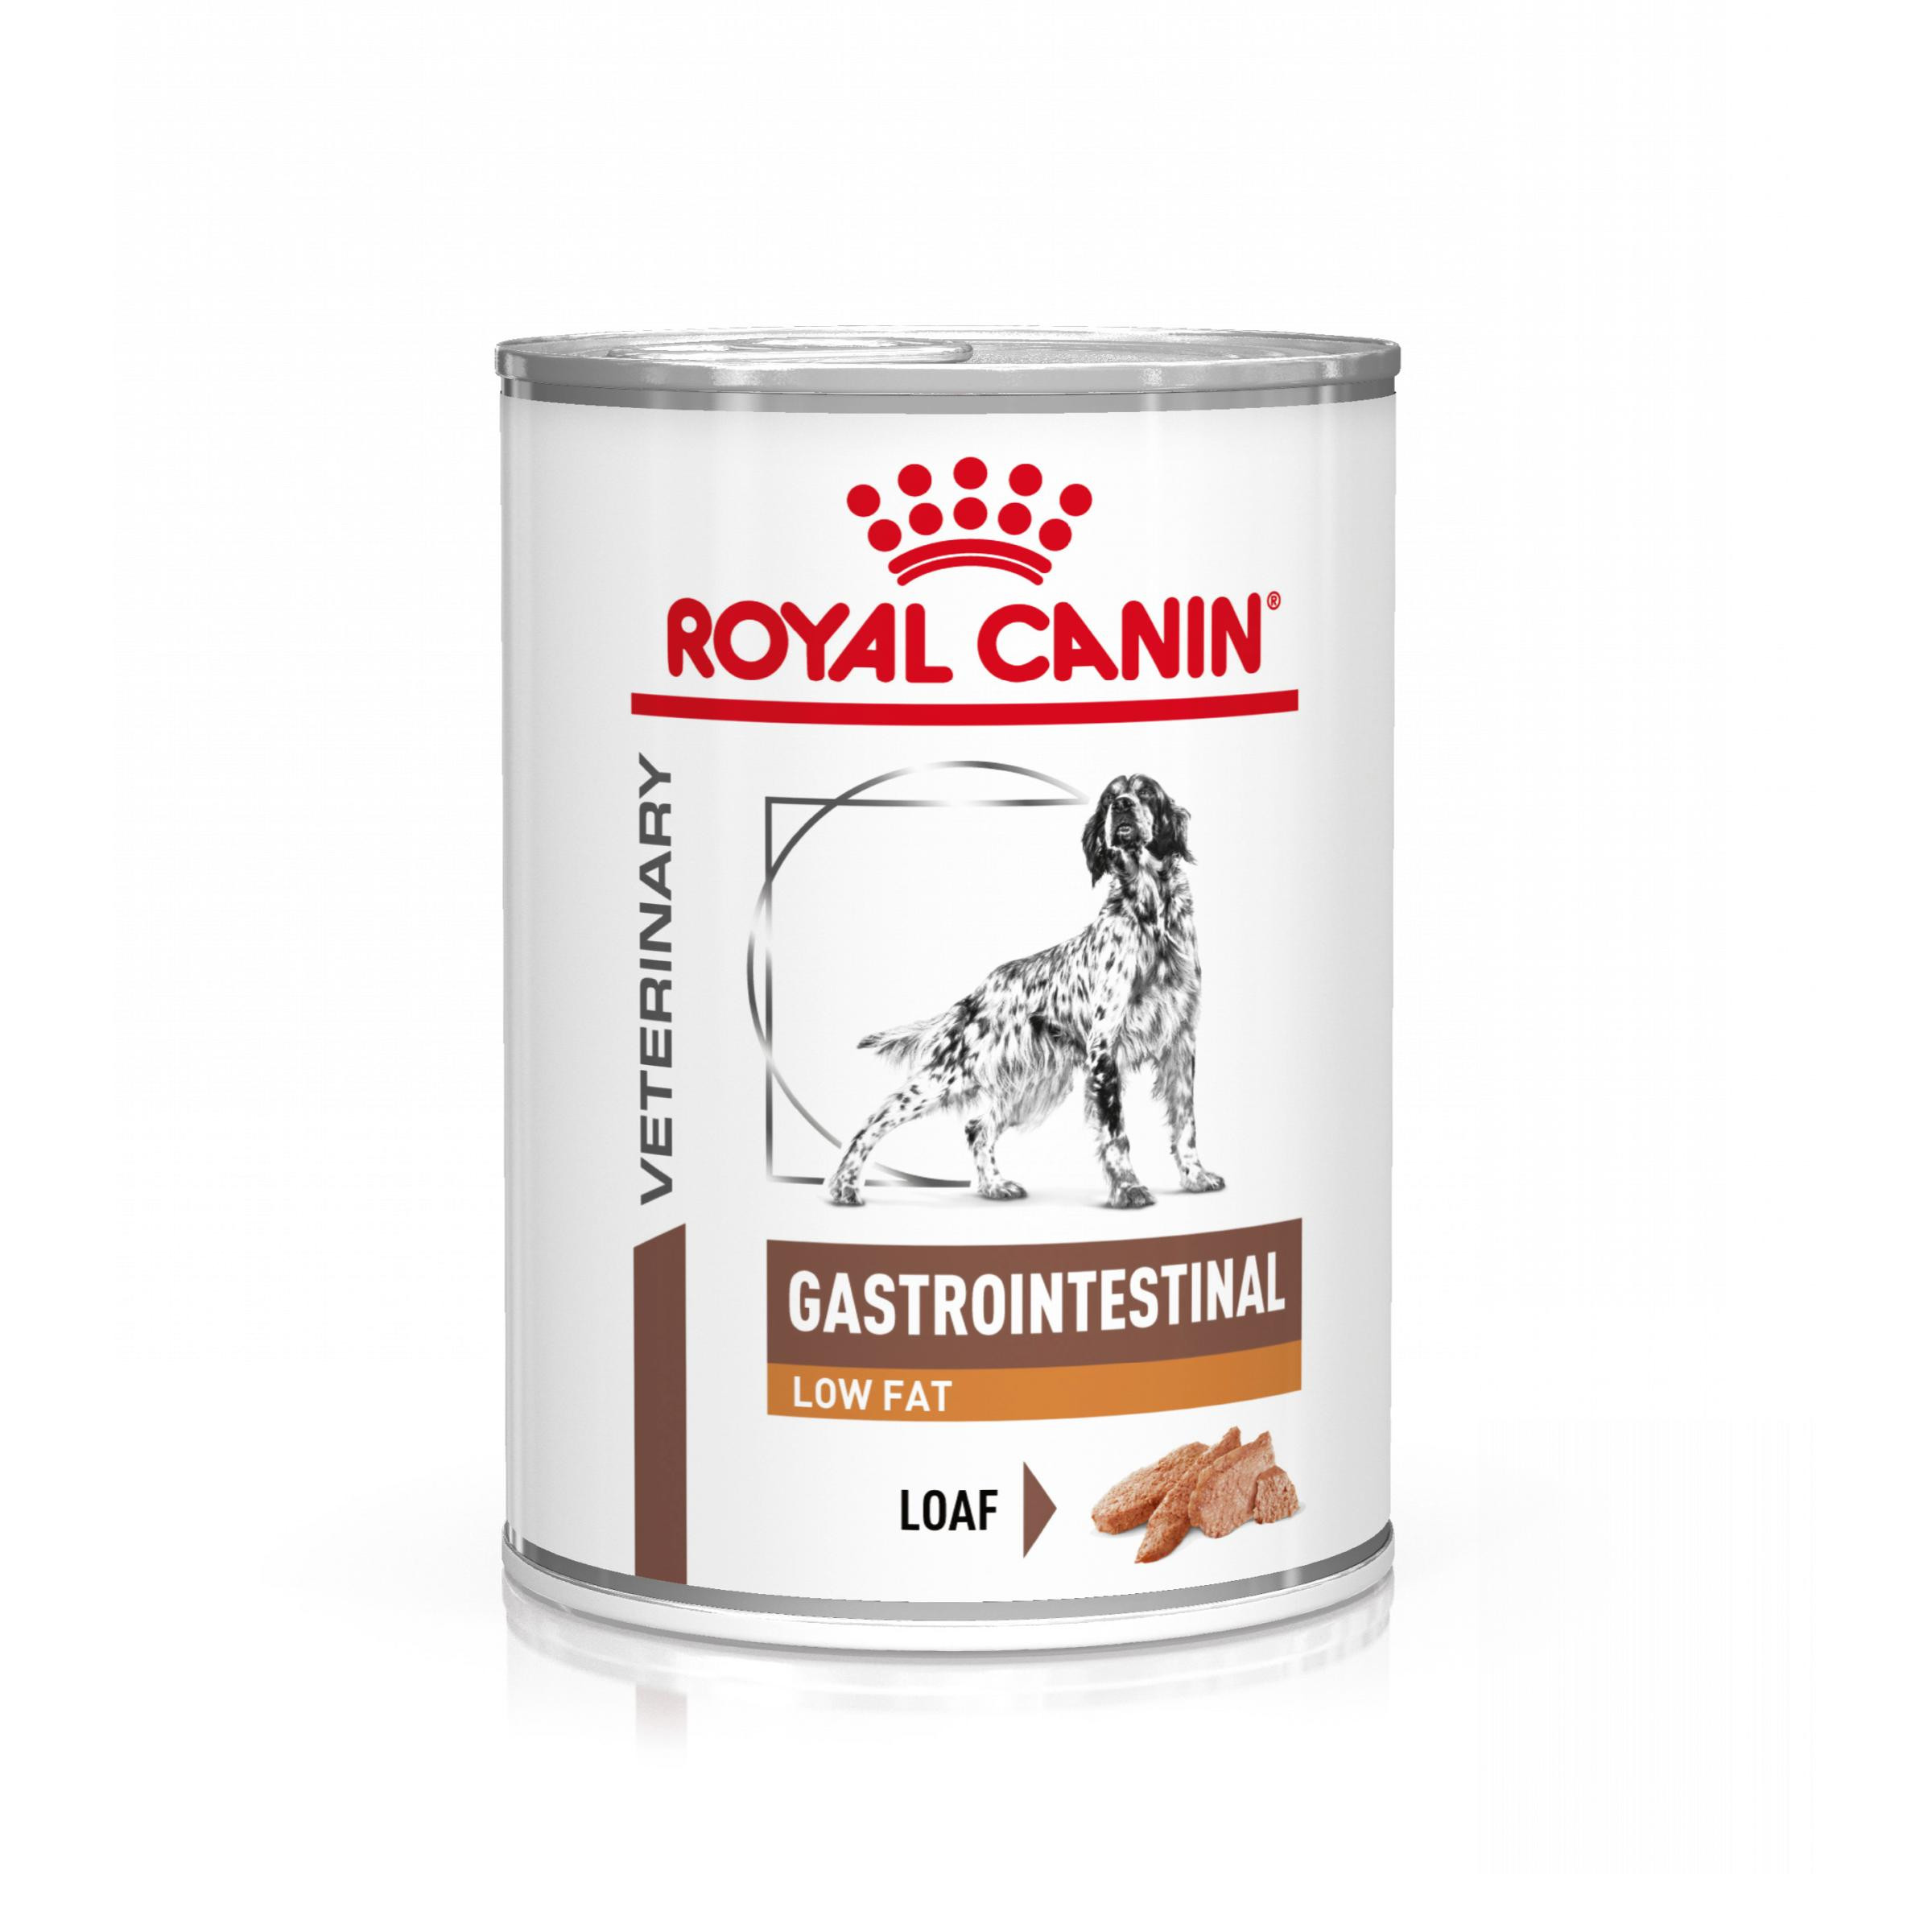 Immagine di 4 confezioni (48 x 420 g) Royal Canin Veterinary Gastrointestinal Low Fat cibo umido per cane